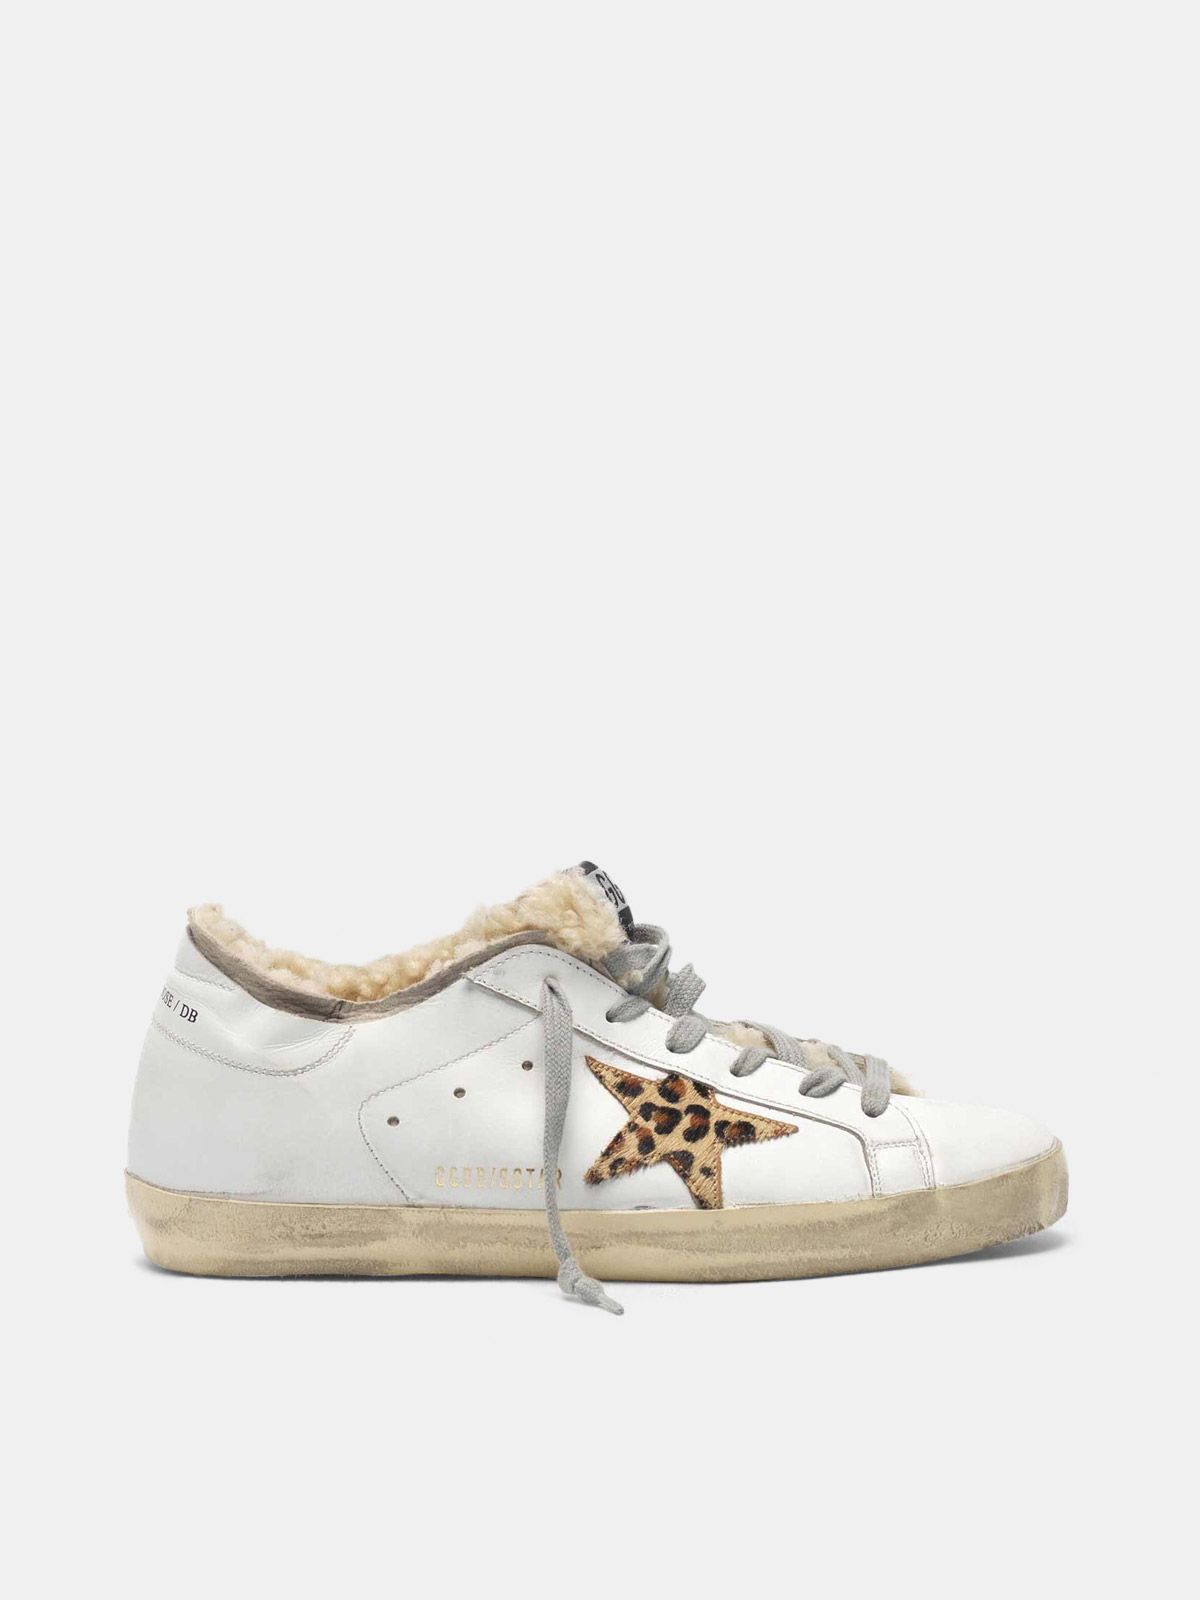 golden goose leopard sneakers